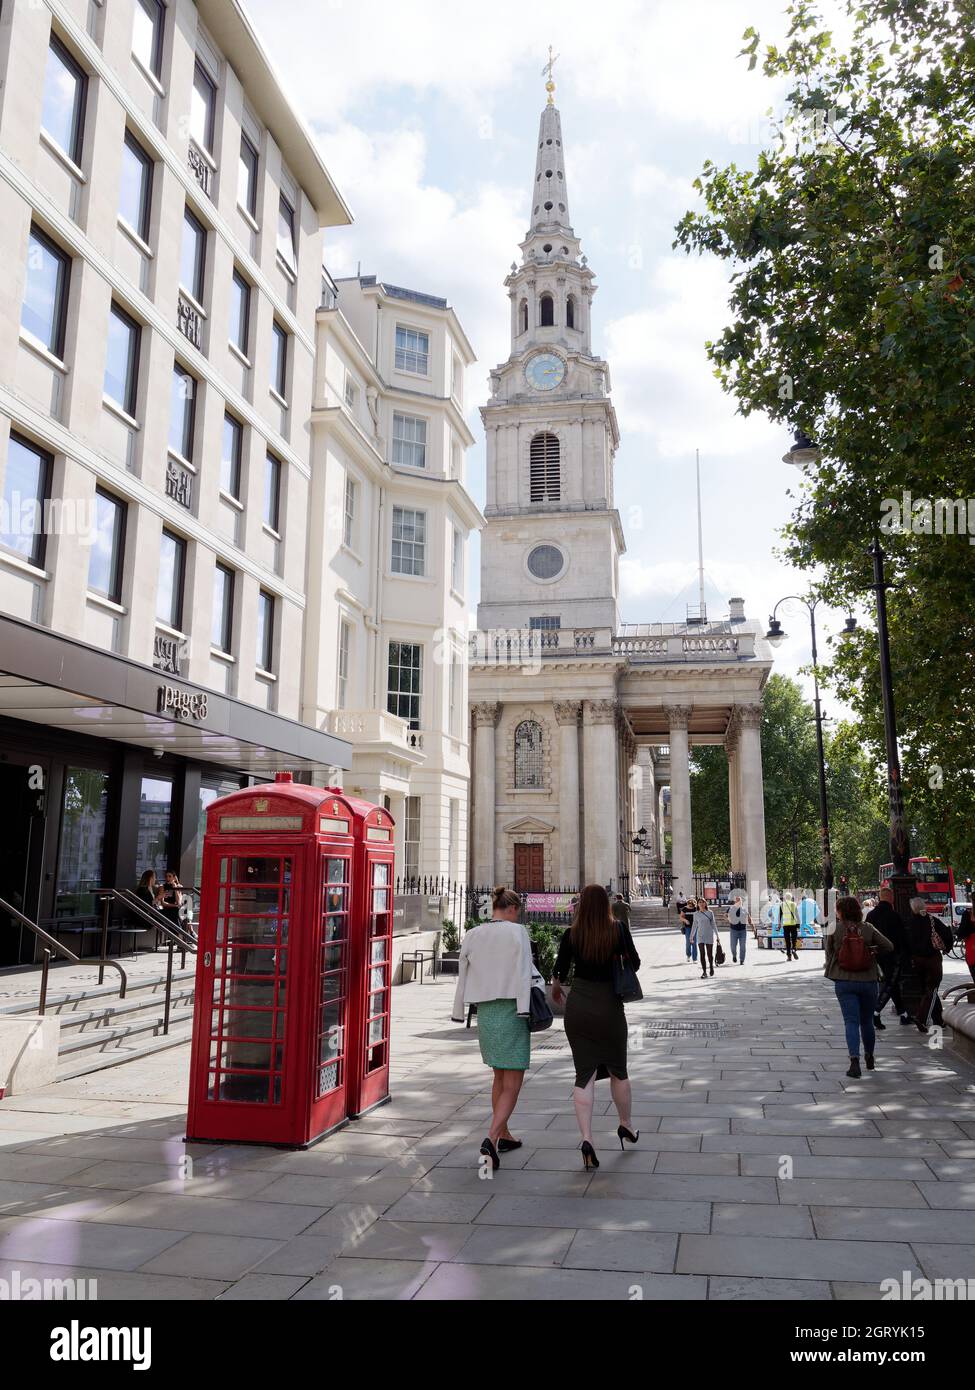 Londres, Grand Londres, Angleterre, septembre 21 2021: Femme passant devant les boîtes téléphoniques avec l'église St Martin dans les champs derrière Trafalgar Square. Banque D'Images